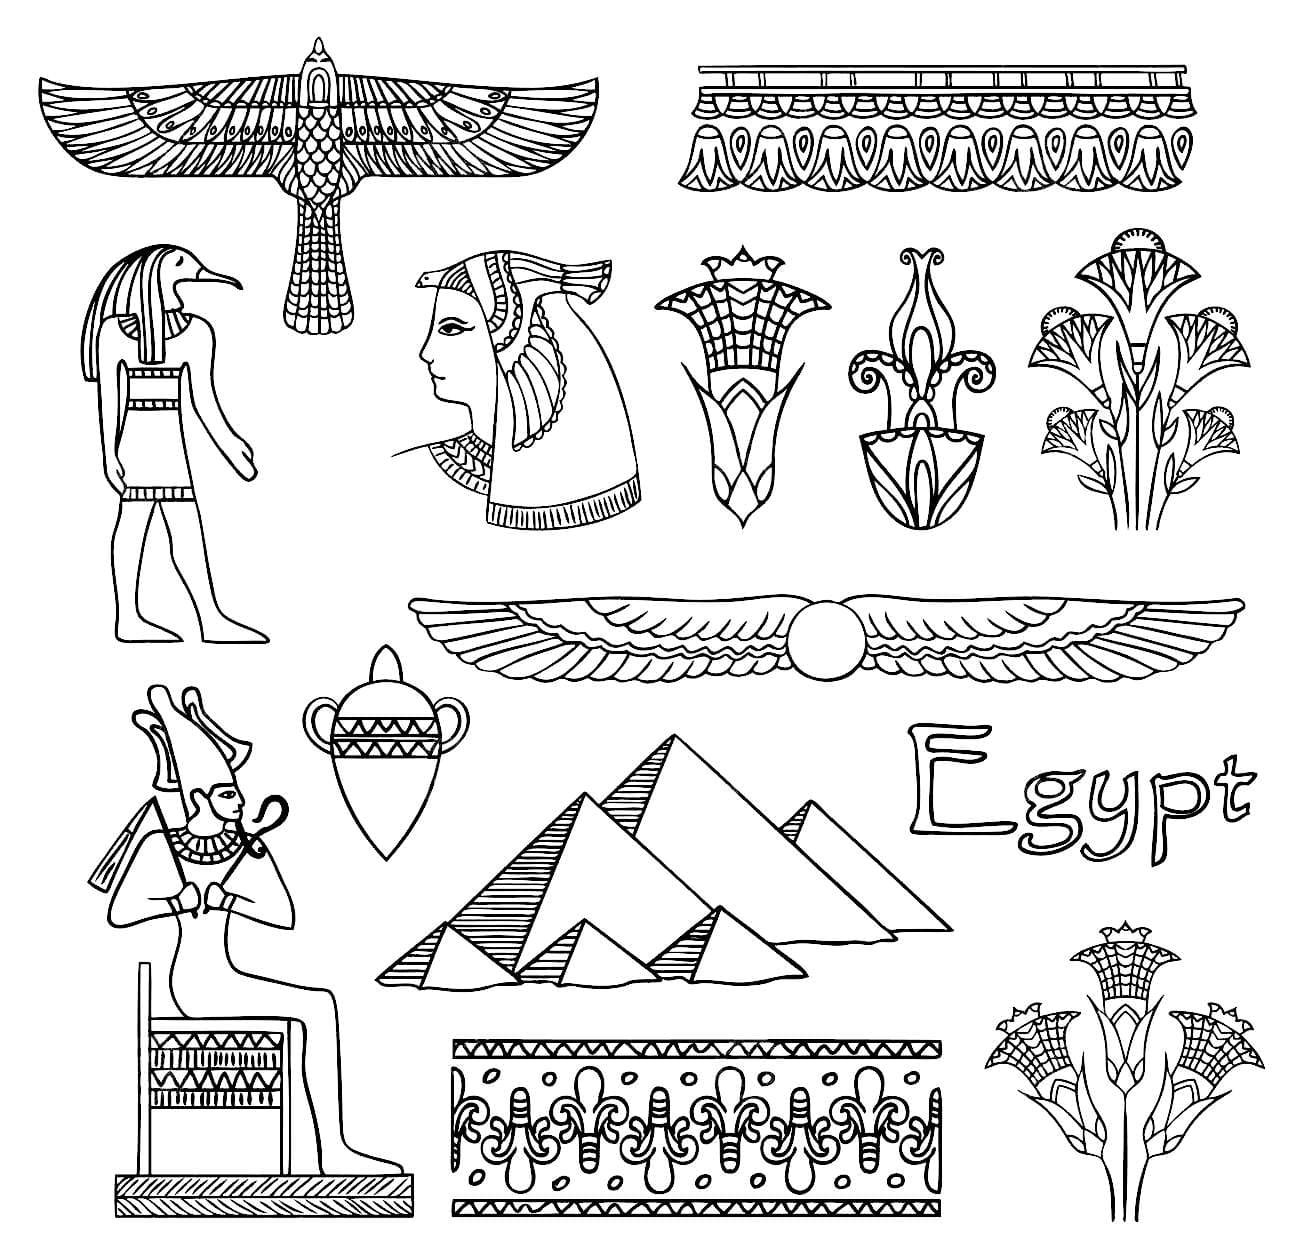 Антропоморфный орнамент древнего Египта